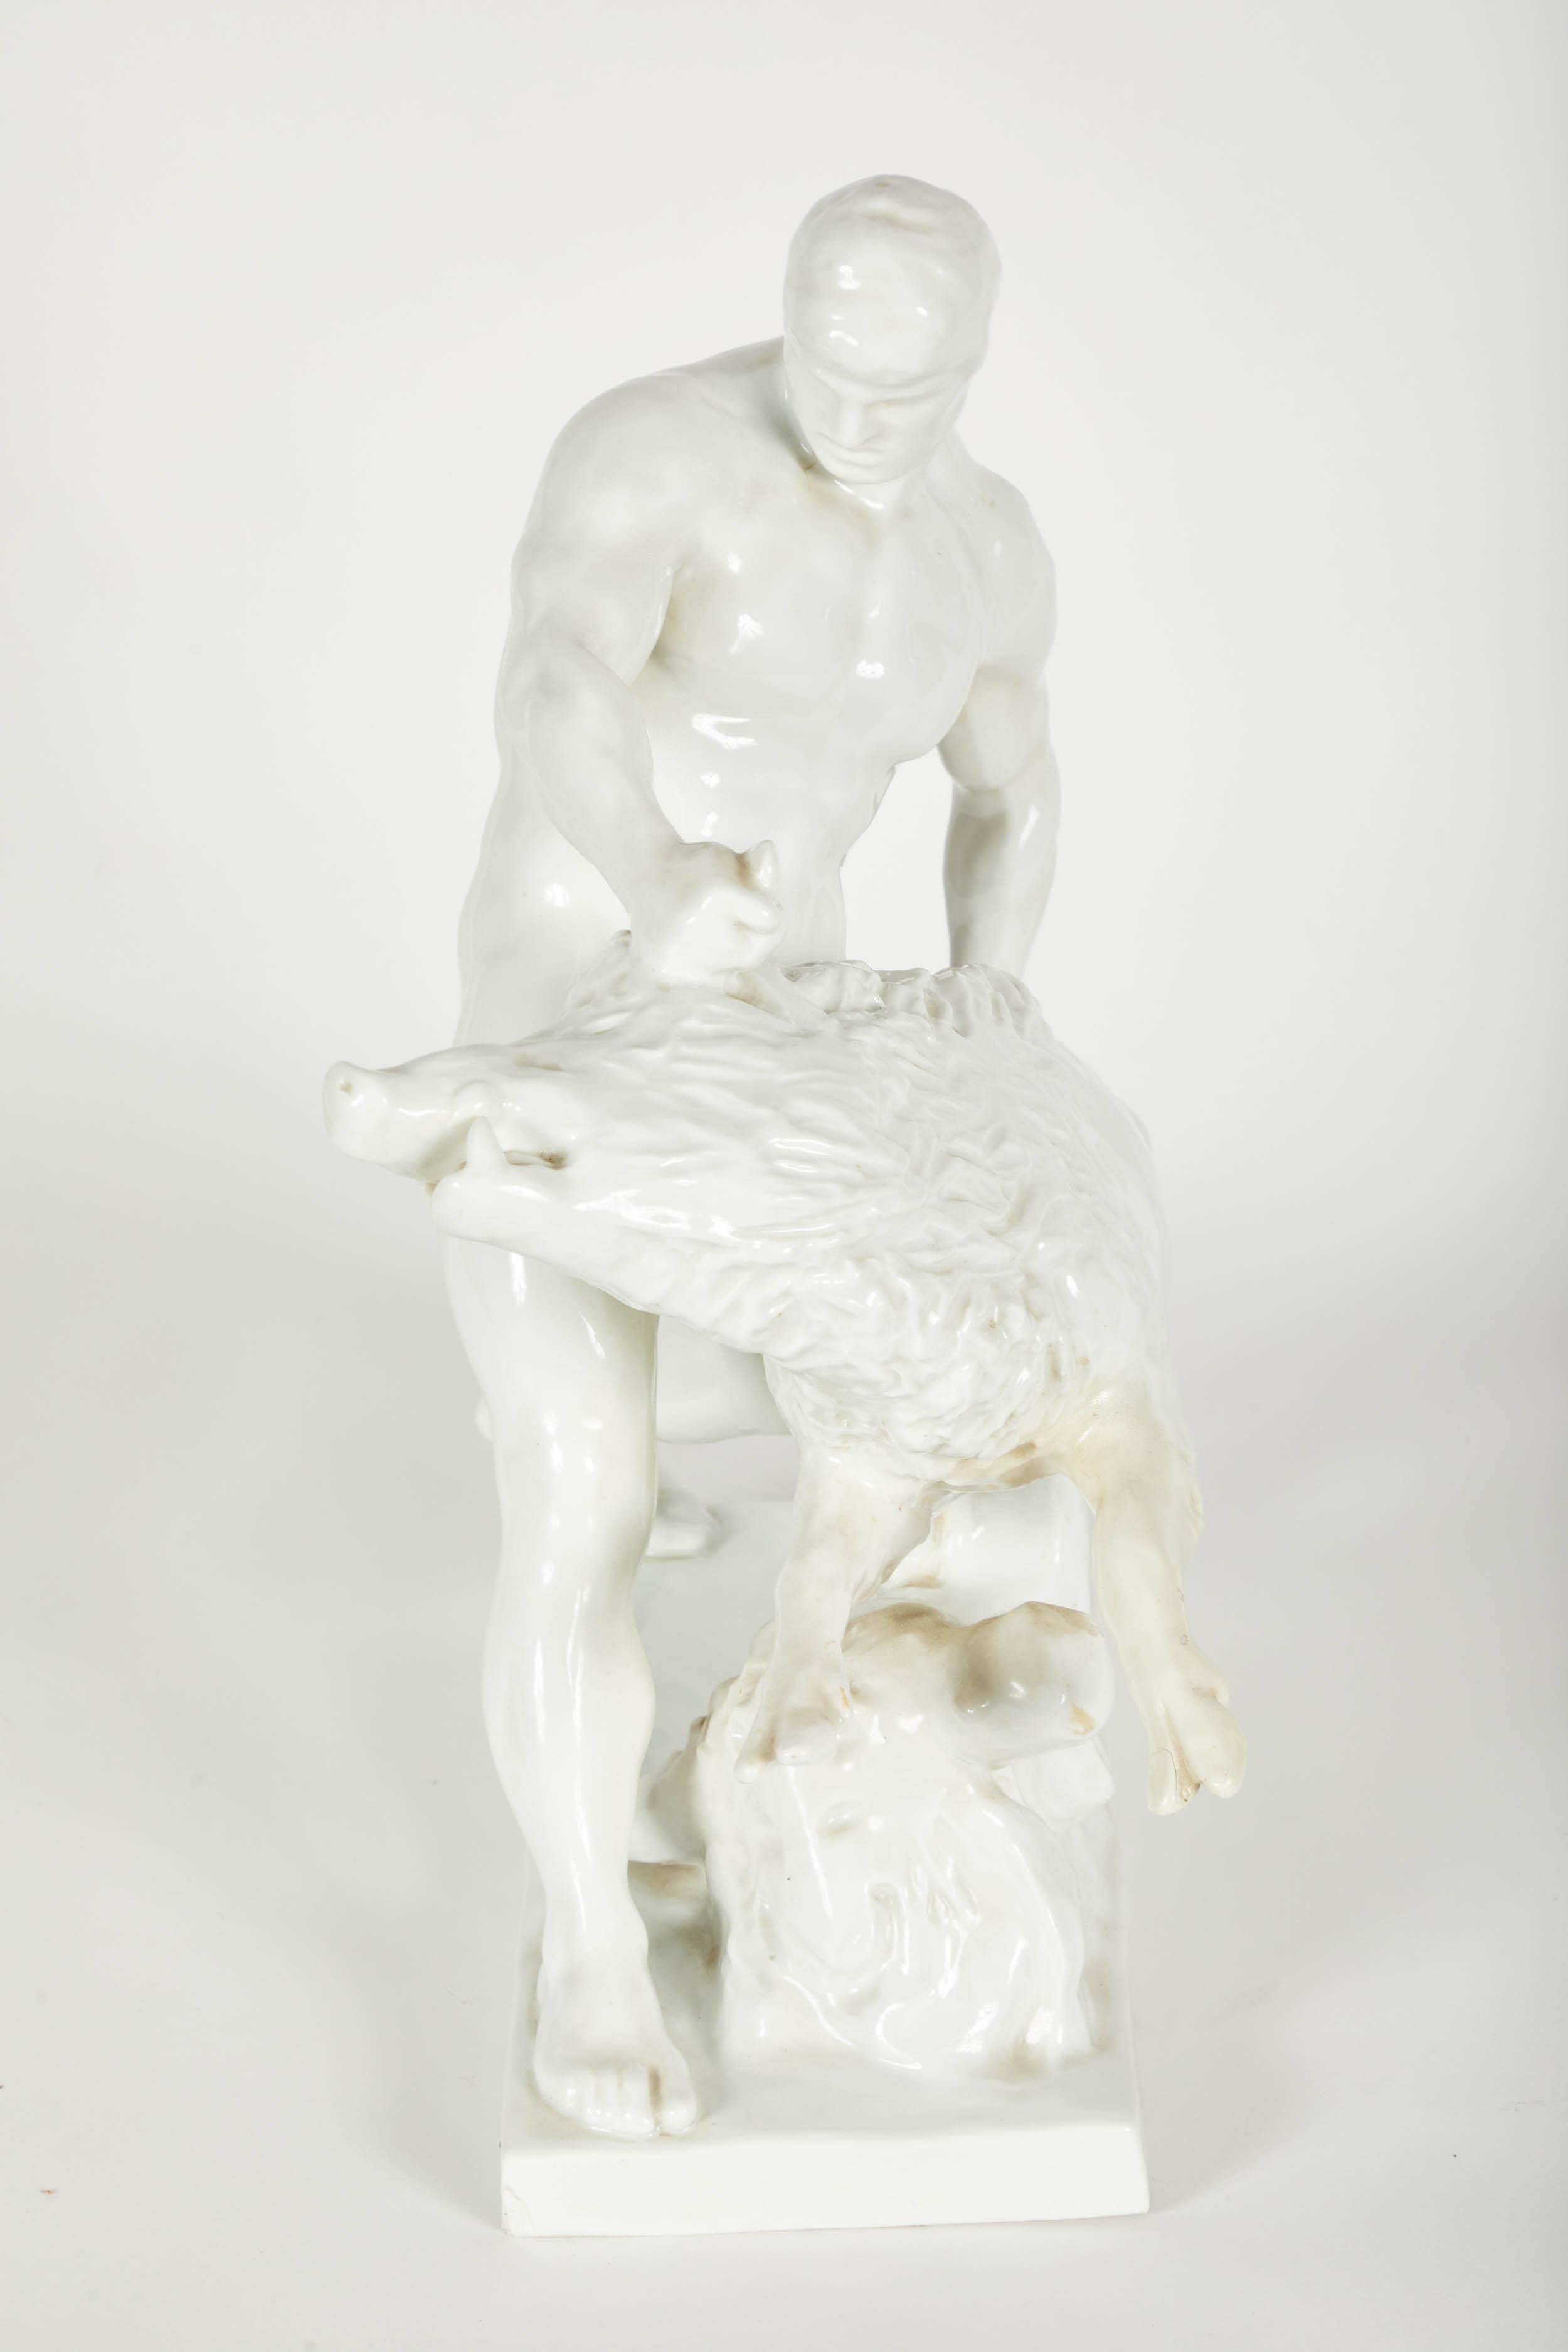 White porcelain sculpture of Man Wrestling Boar.